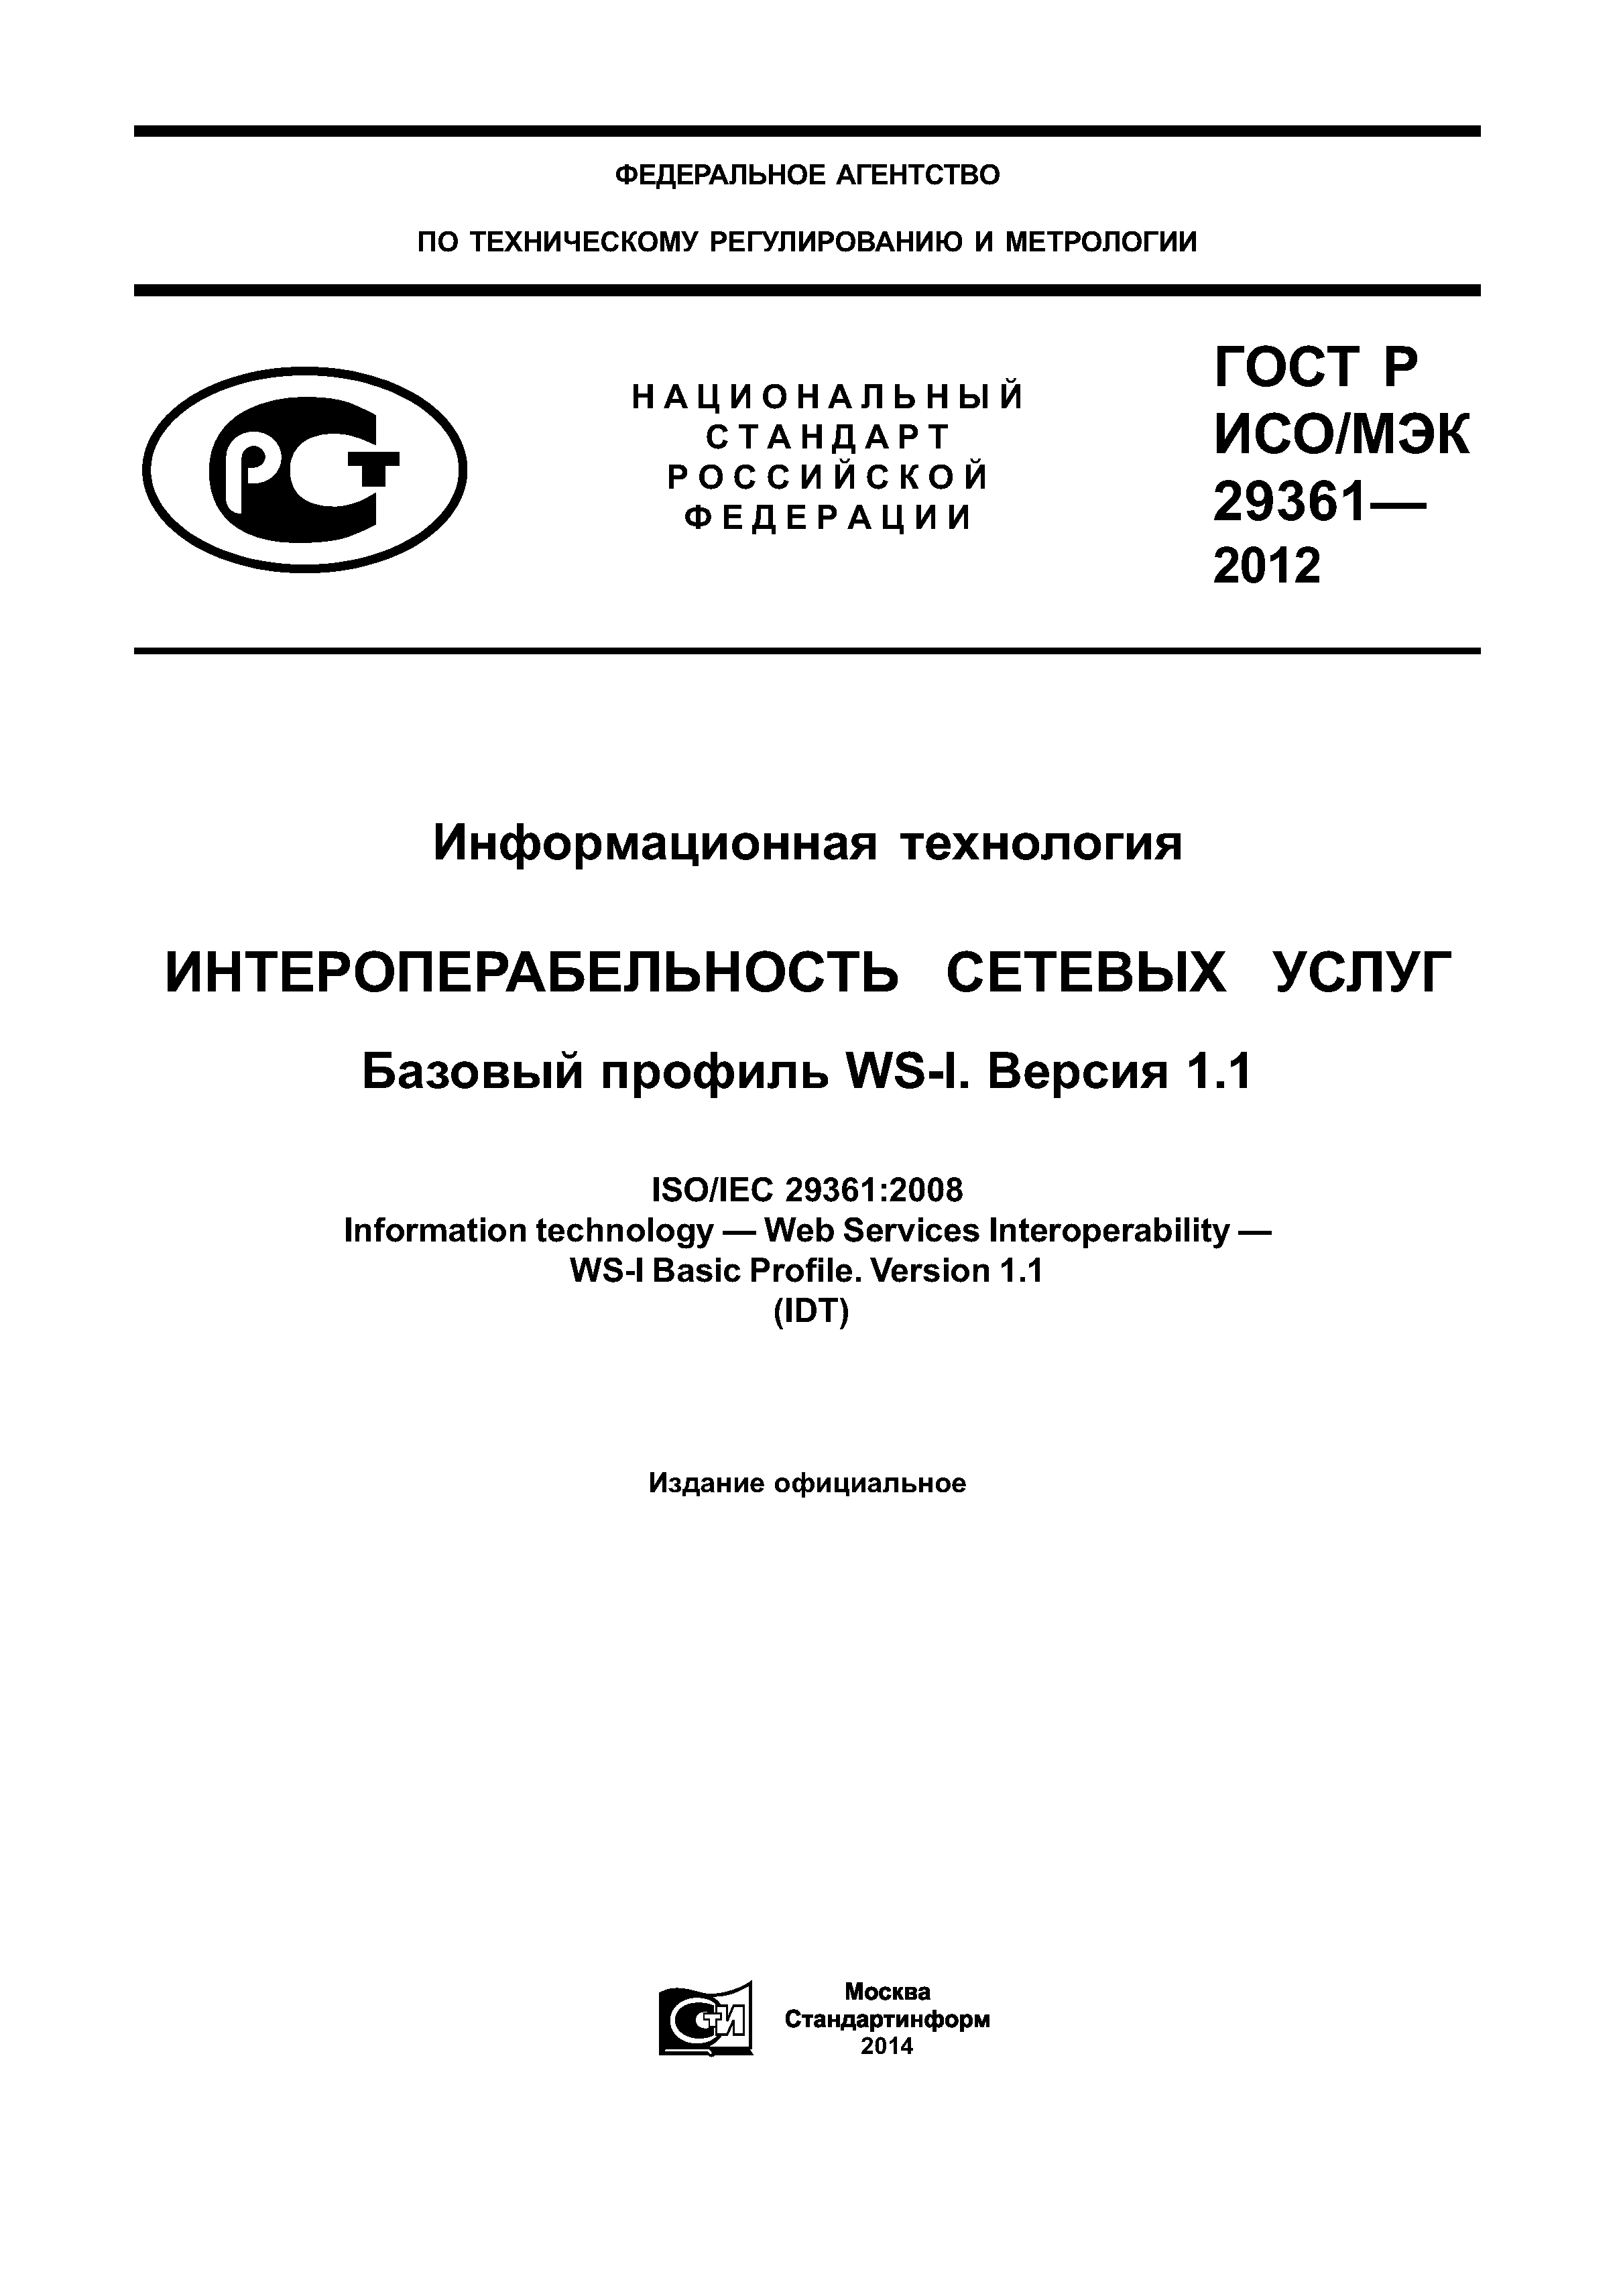 ГОСТ Р ИСО/МЭК 29361-2012